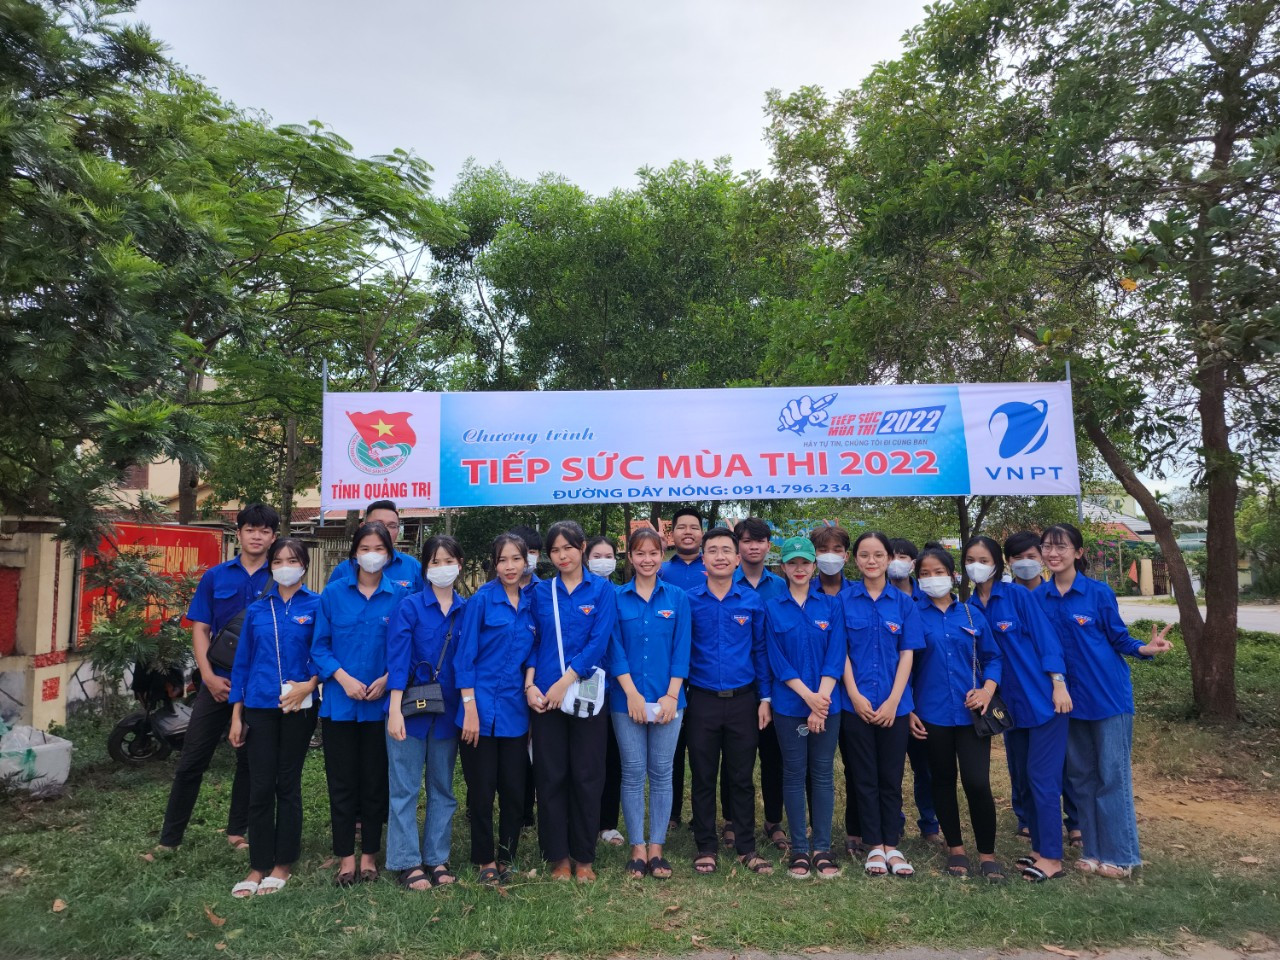 Theo đó, trao đổi với phóng viên Báo Đại Đoàn Kết, anh Phạm Xuân Khánh cho biết, hơn 500 đoàn viên thanh niên trên địa bàn tỉnh Quảng Trị đang tham gia hỗ trợ thí sinh, người nhà trong kỳ thi tốt nghiệp THPT năm 2022.